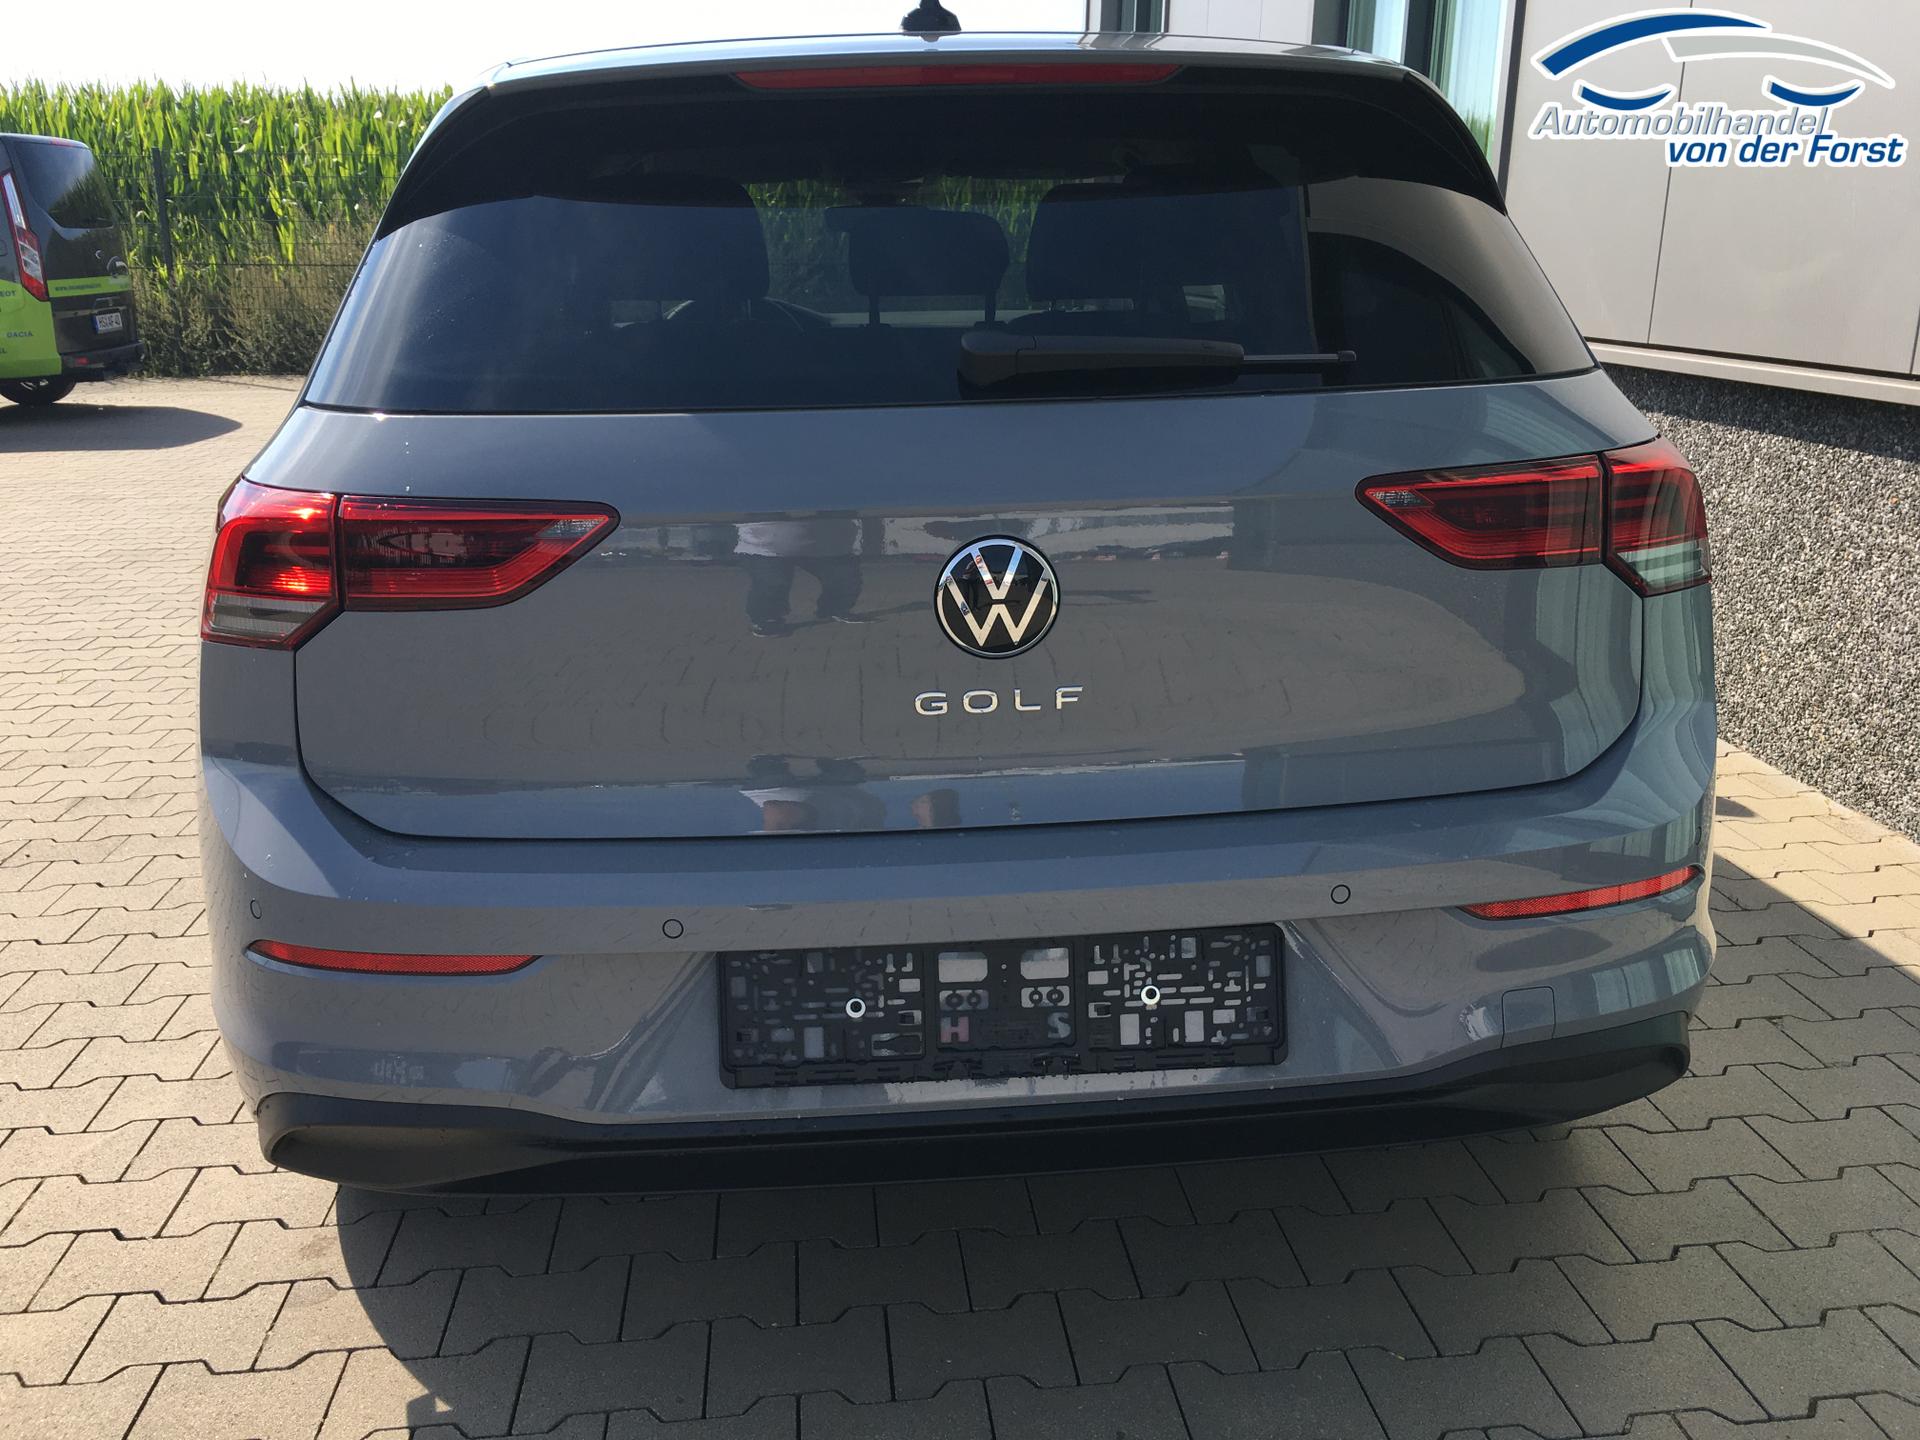 Sportsitze für VW Golf günstig bestellen